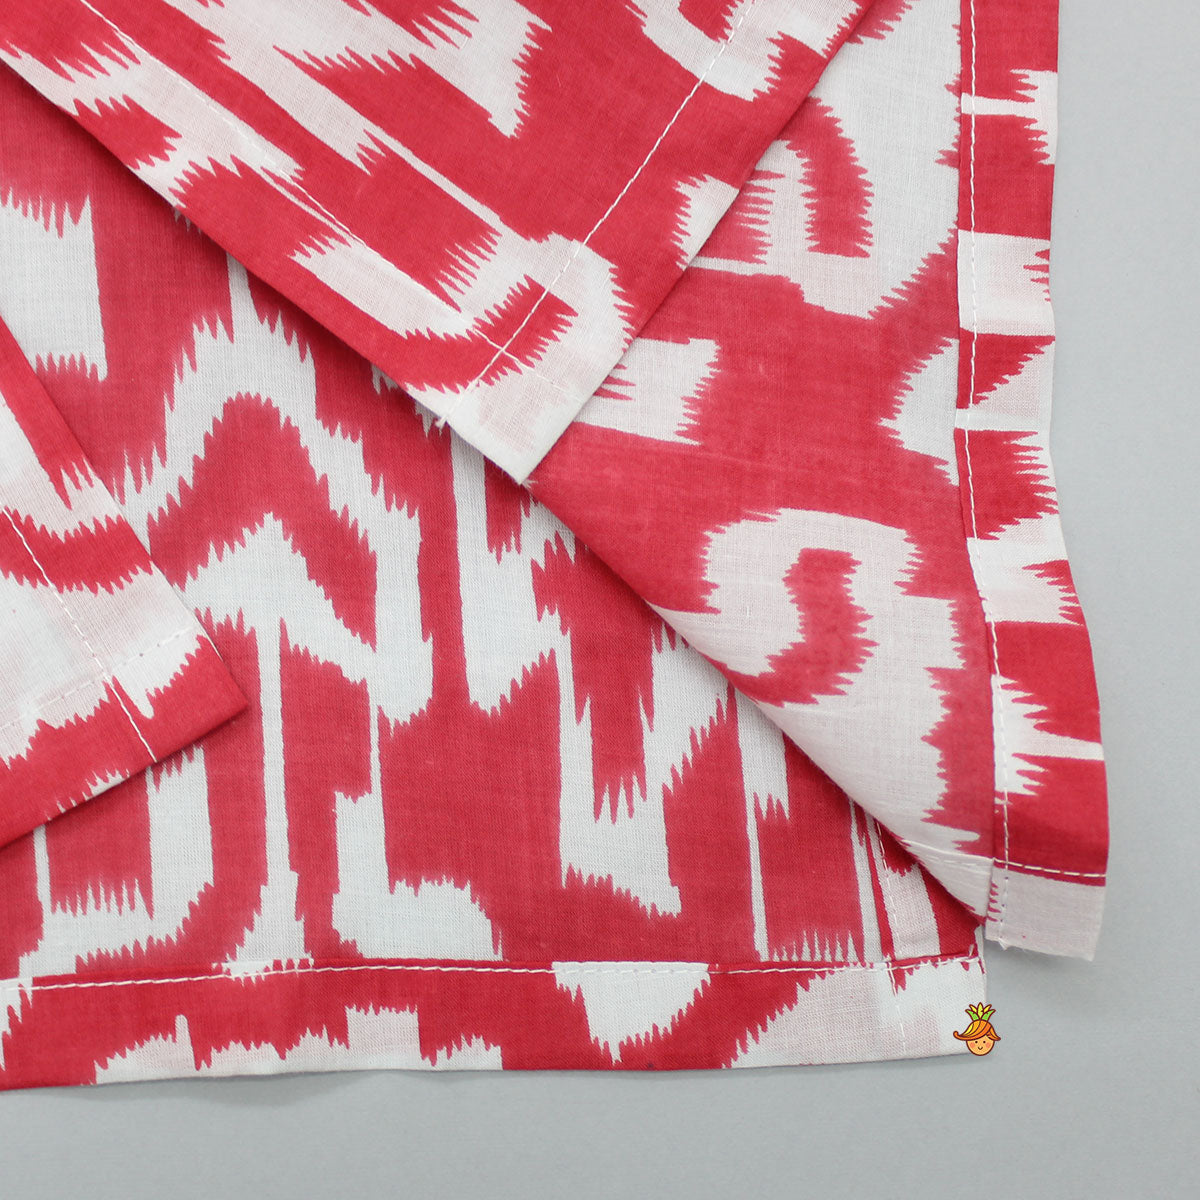 Printed Gota Lace Detailed Red Kurta With Pyjama